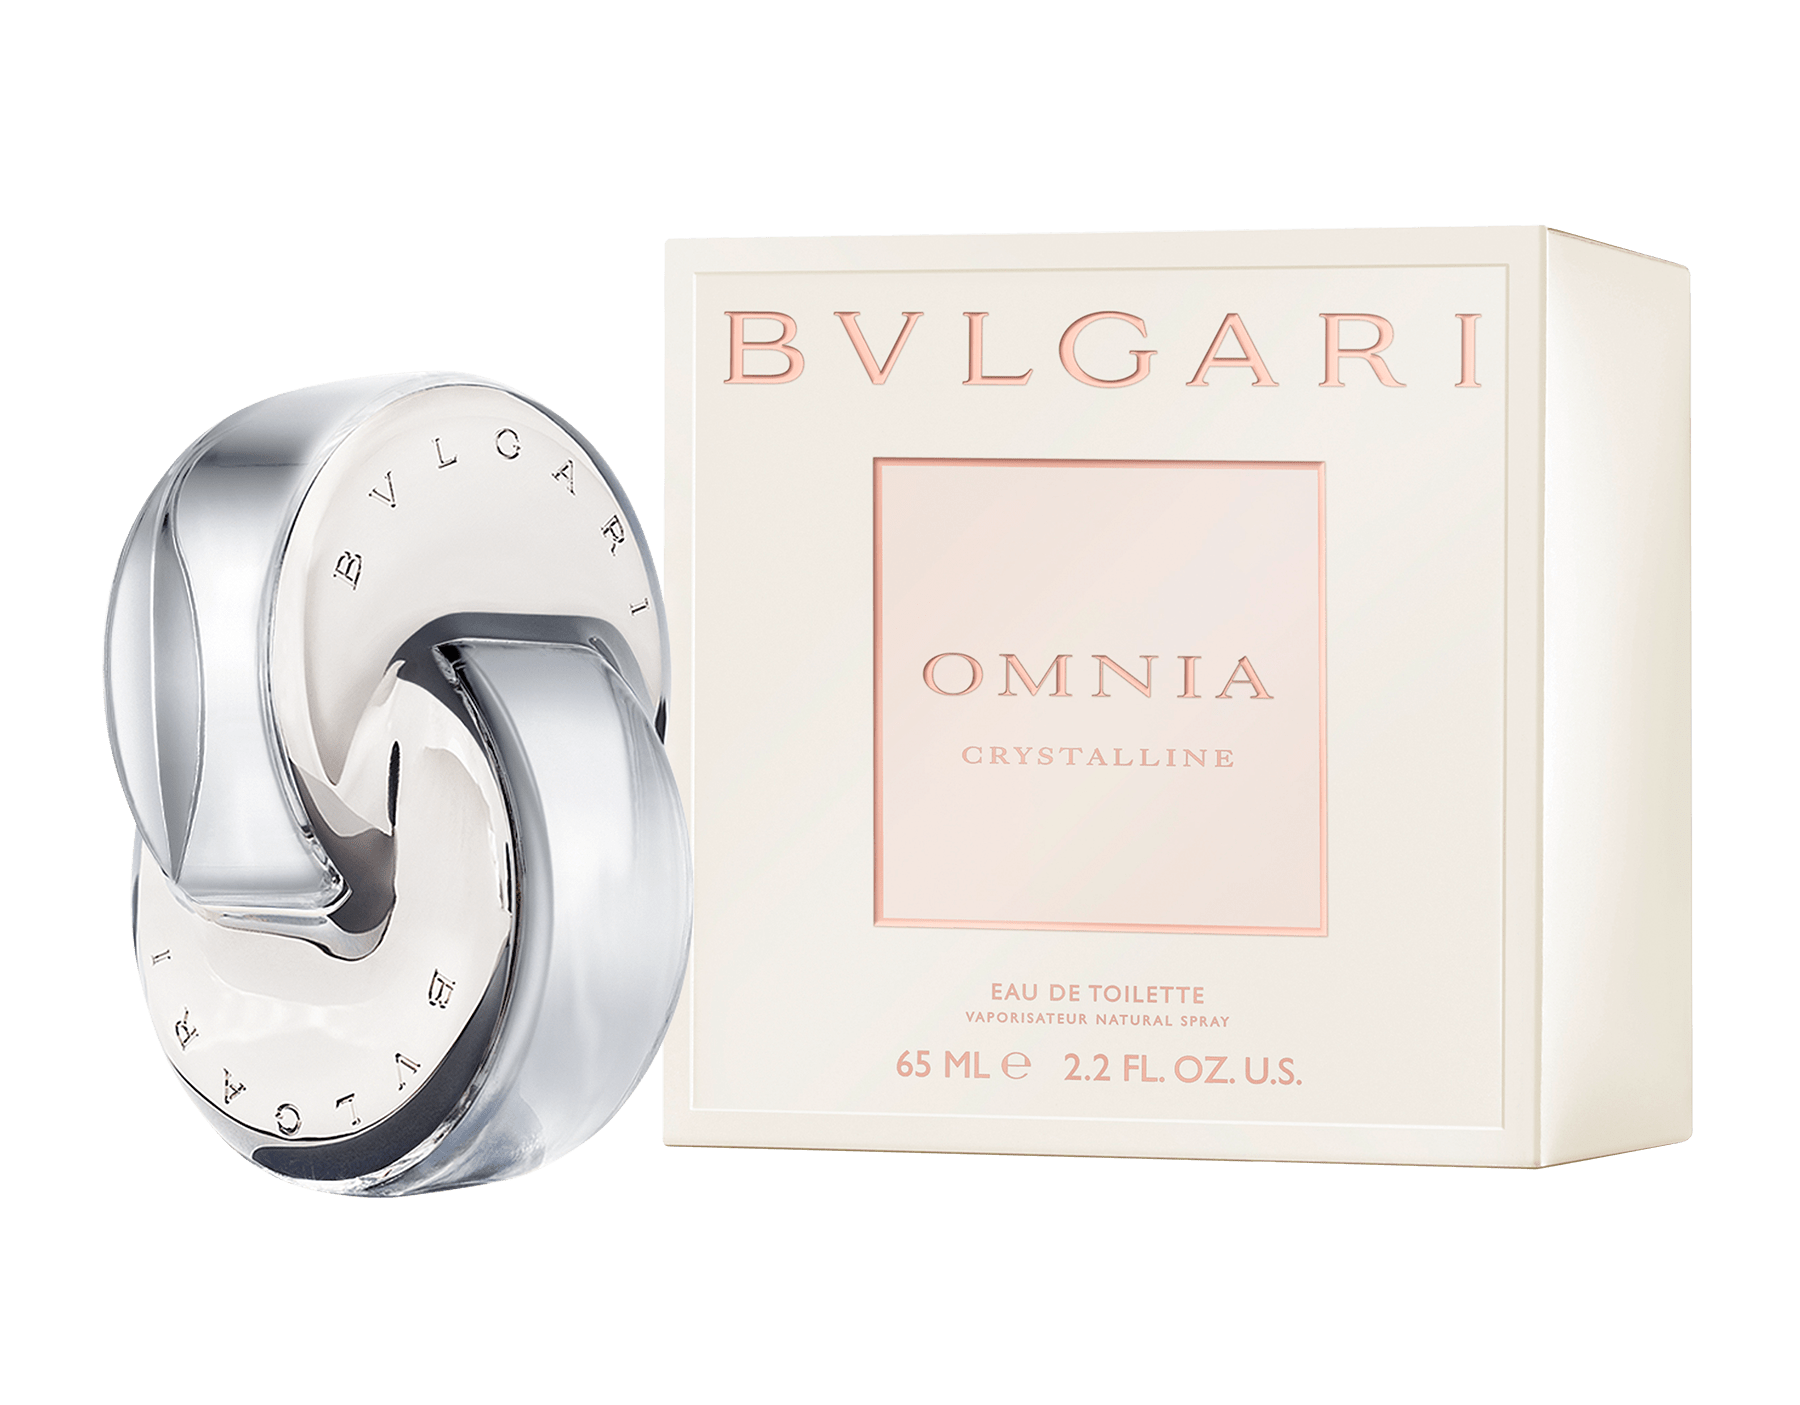 bvlgari omnia crystalline ingredients